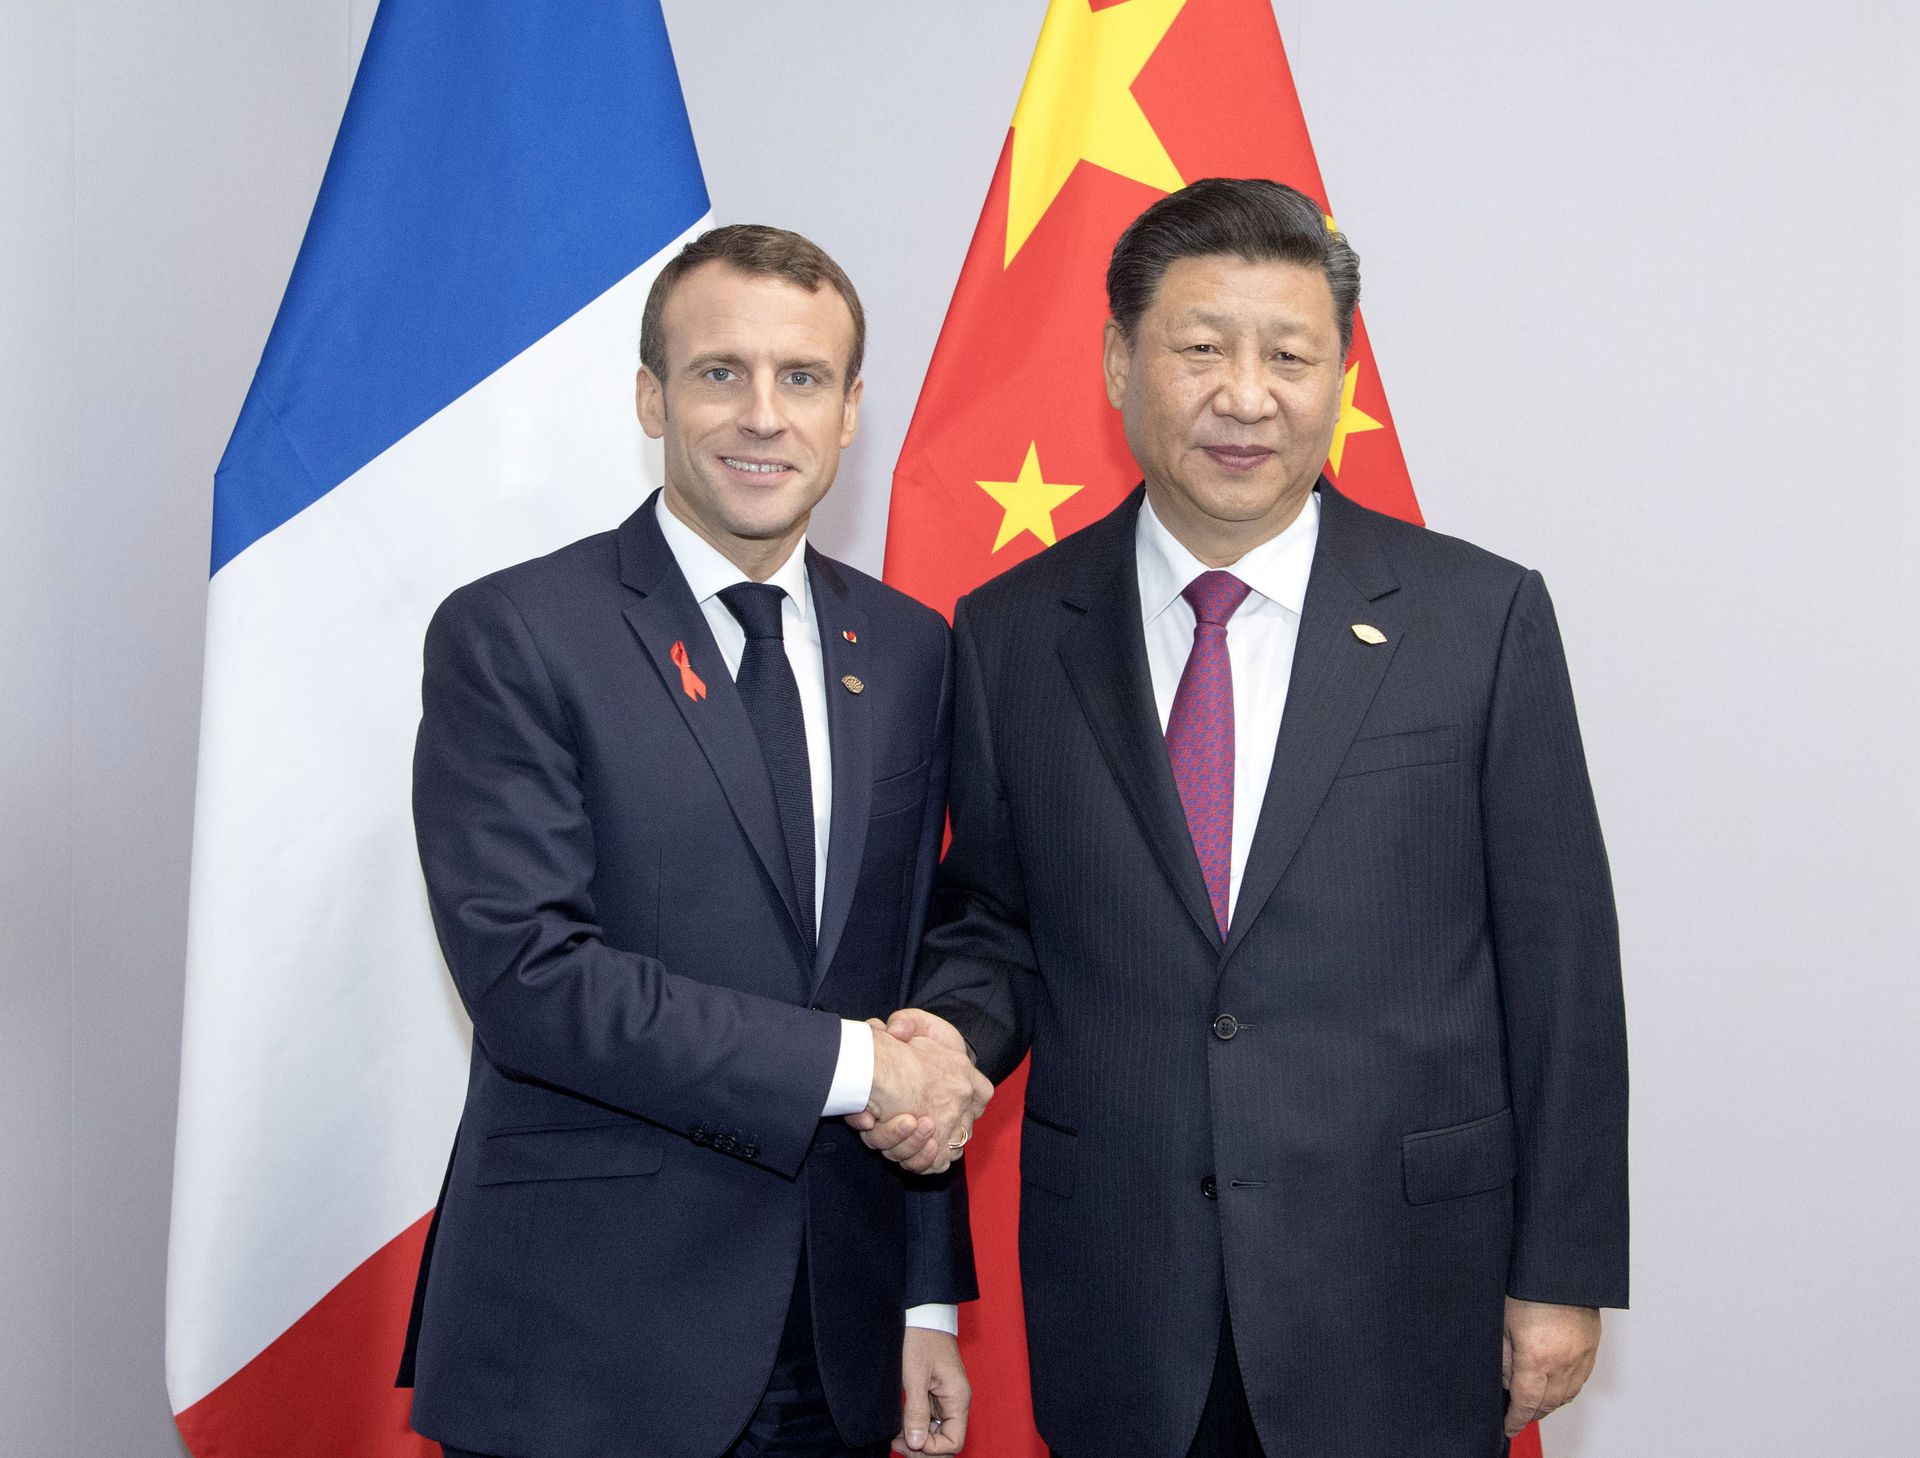 法国或重审与中国关系　英国预计巴黎将祭出更实质性报复